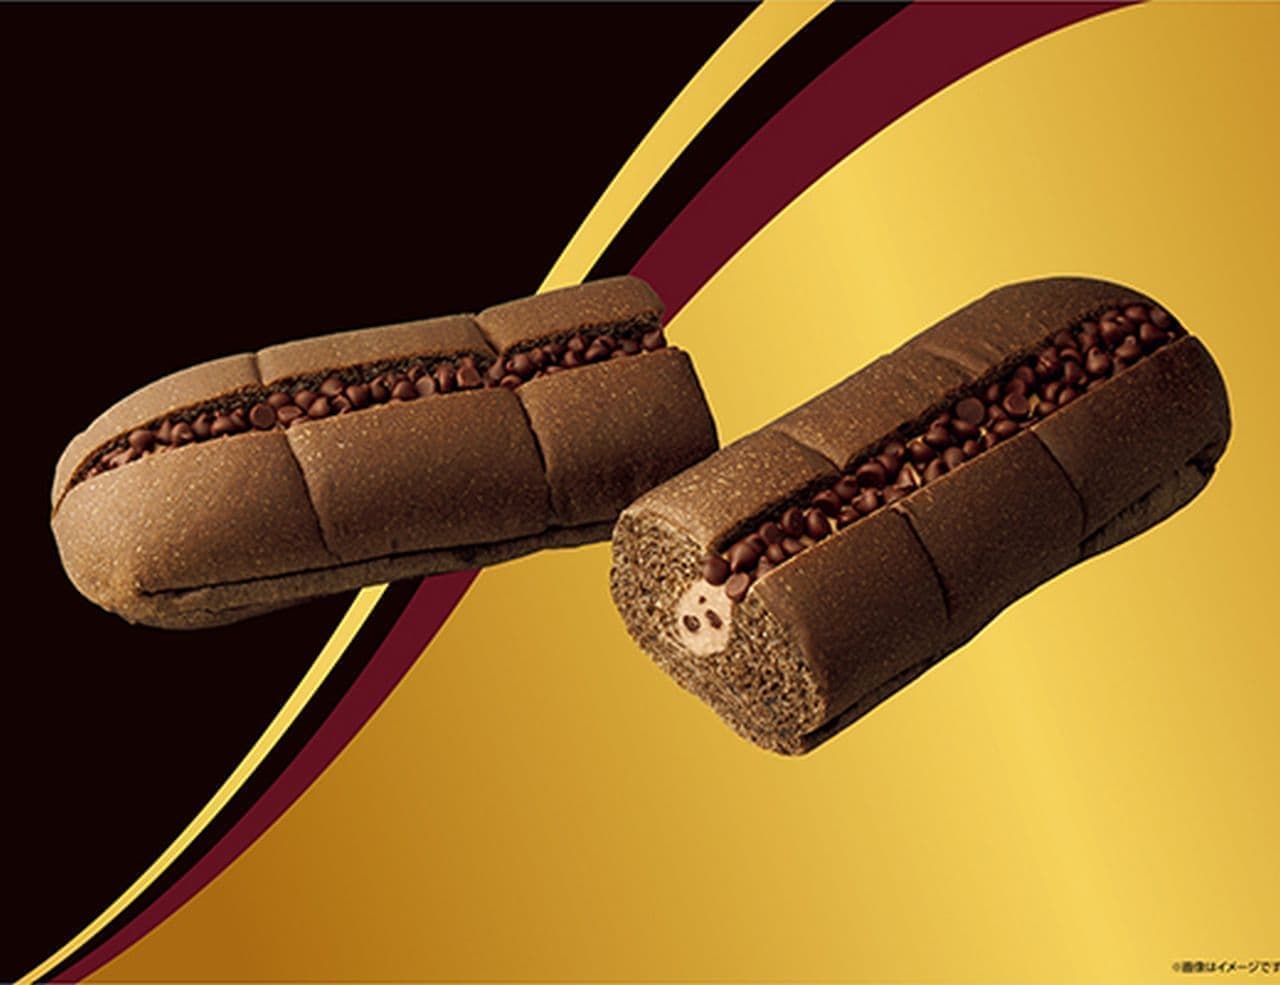 Lawson "GODIVA Chocolat Chigiri Roll